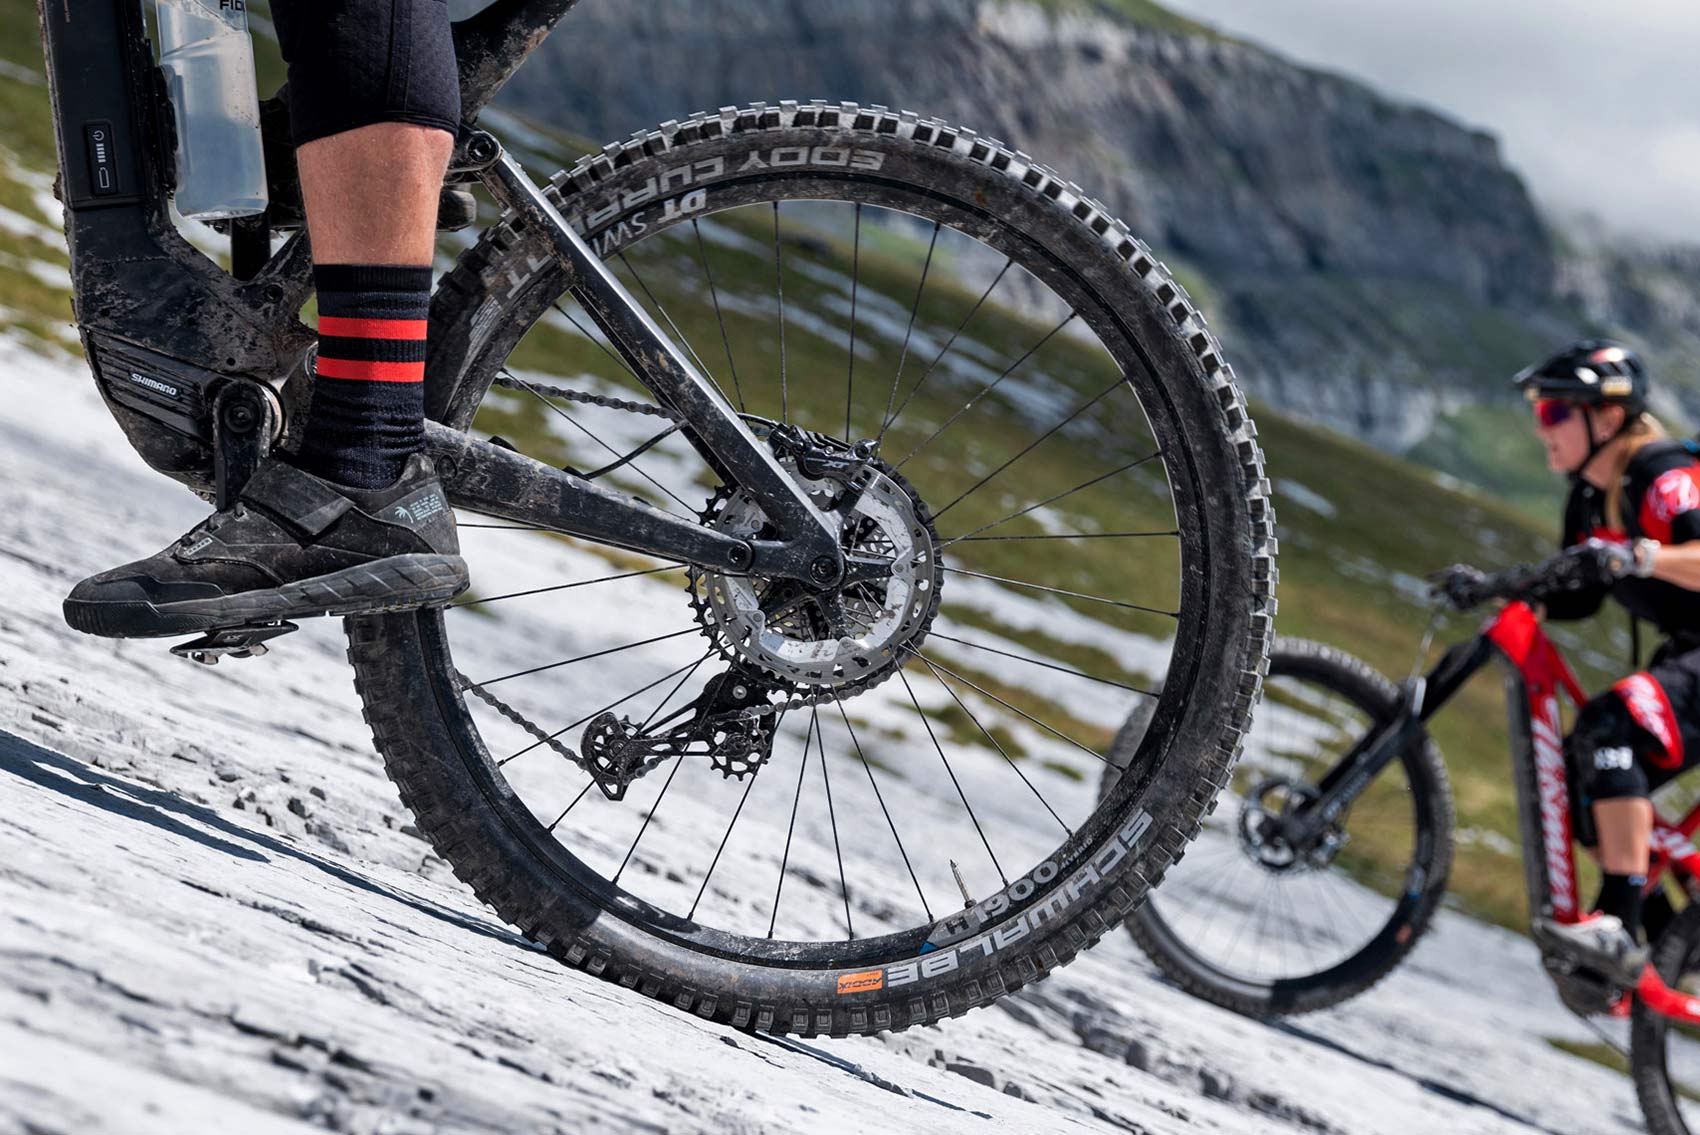 DT Swiss Hybrid 2 eMTB wheels, heavy-duty stronger e-bike hubs spokes wheels, detail photo by Gaudenz Danuser